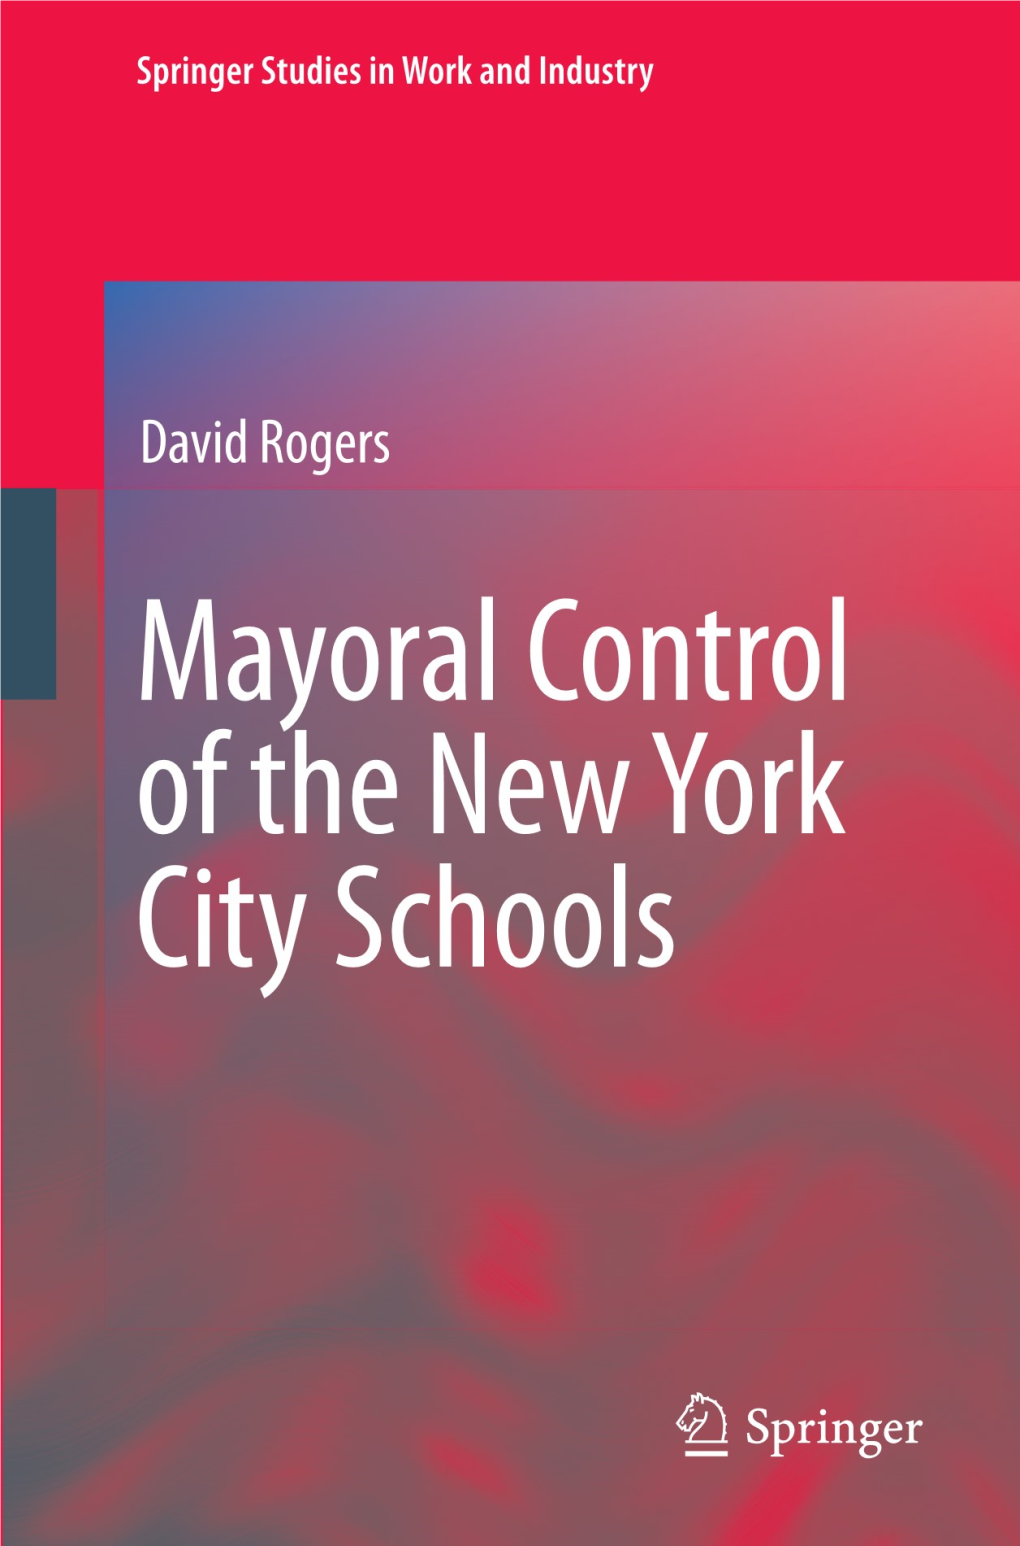 Framework for Assessing Mayoral Control